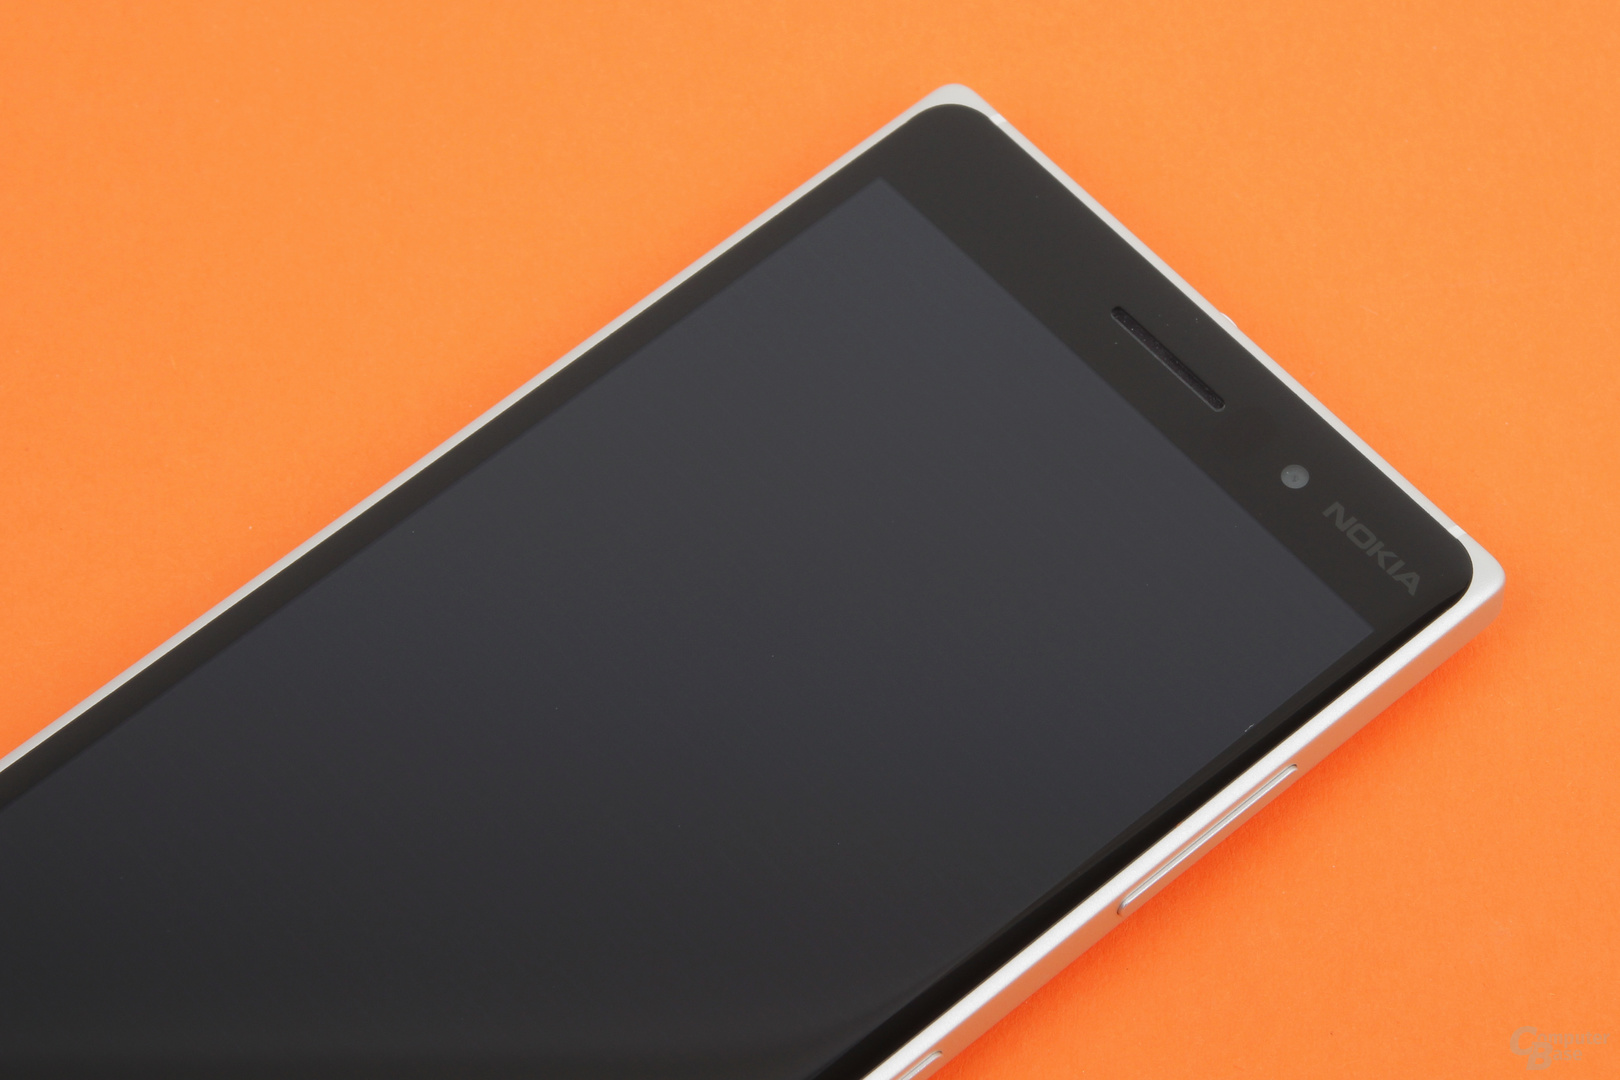 Das Nokia Lumia 830 unterstützt Glance Screen